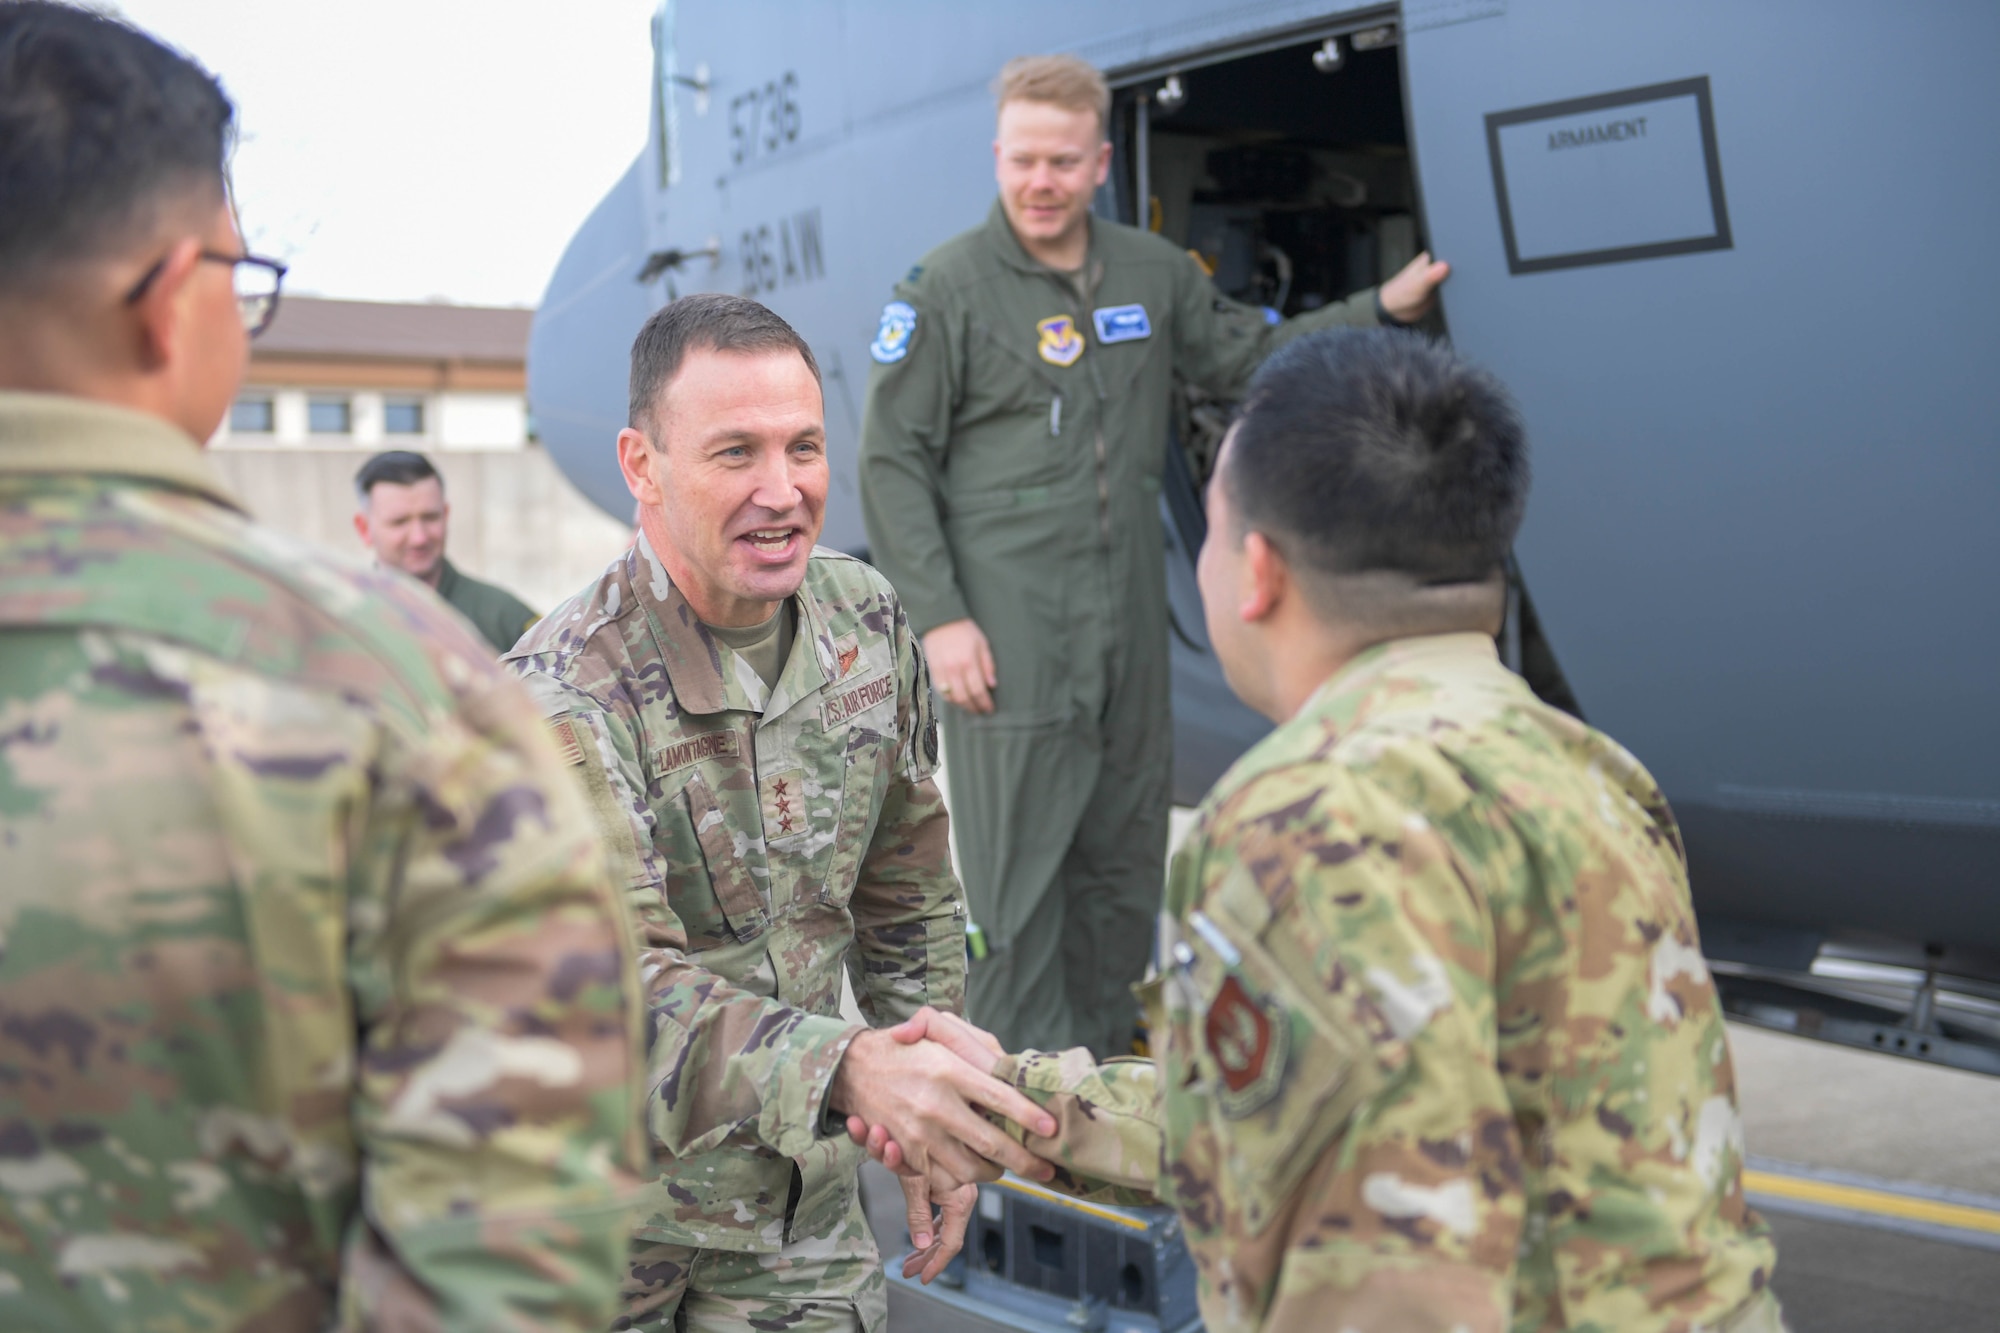 Airman shake hands.